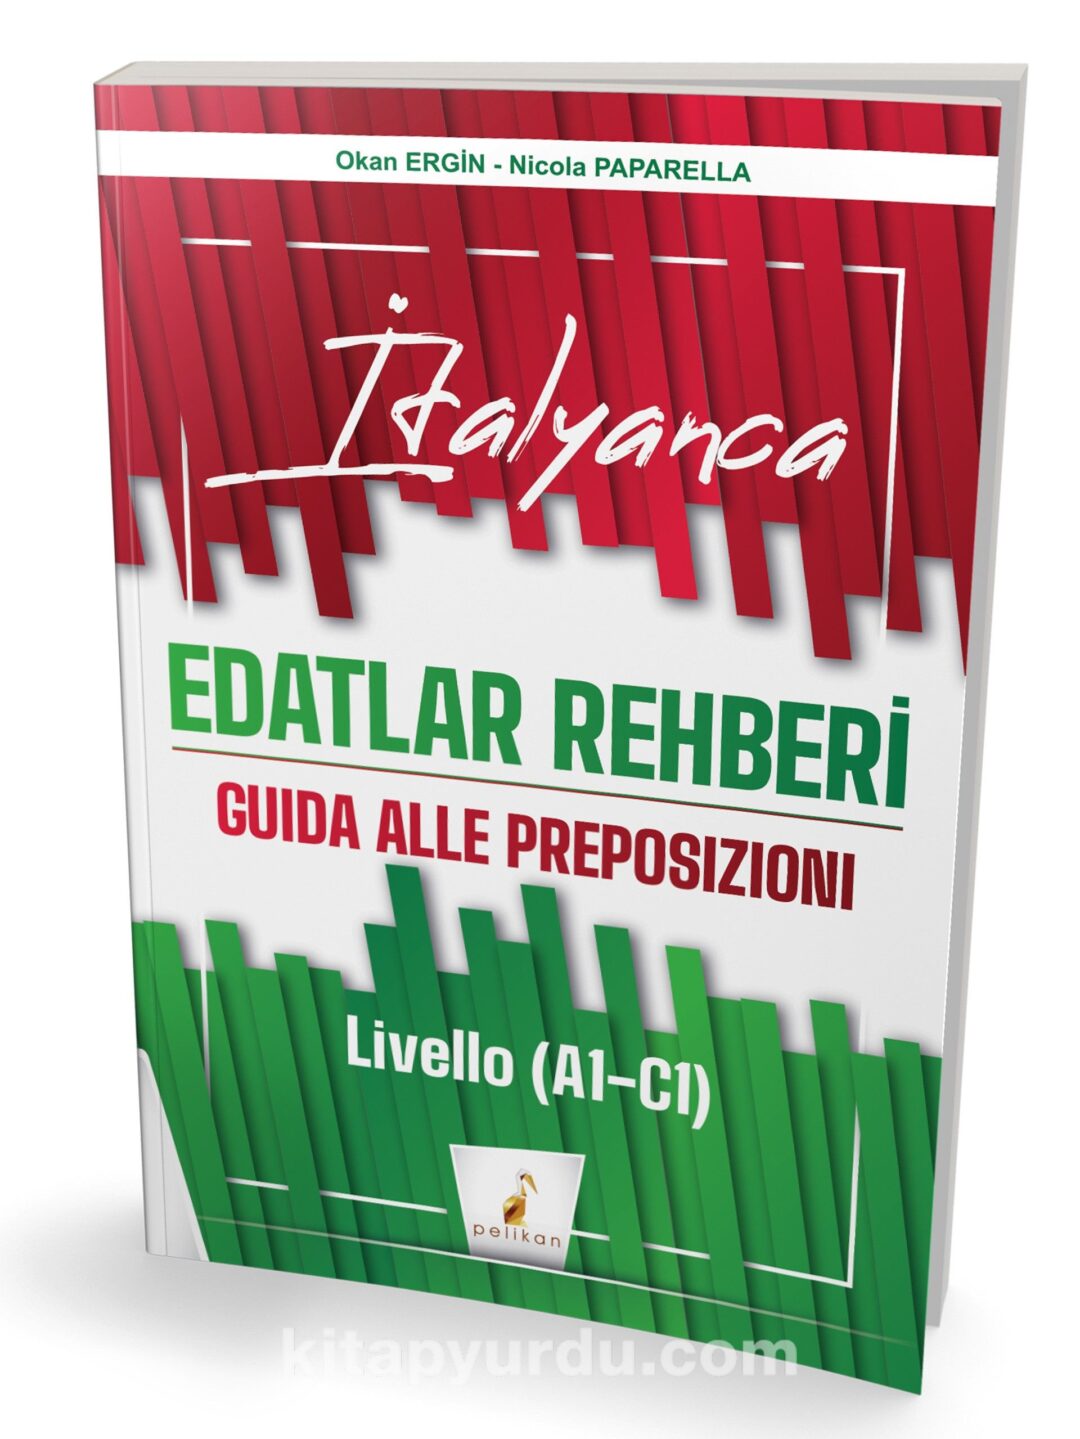 İtalyanca Edatlar Rehberi & Guida Alle Preposizioni – Livello (A1- C1)